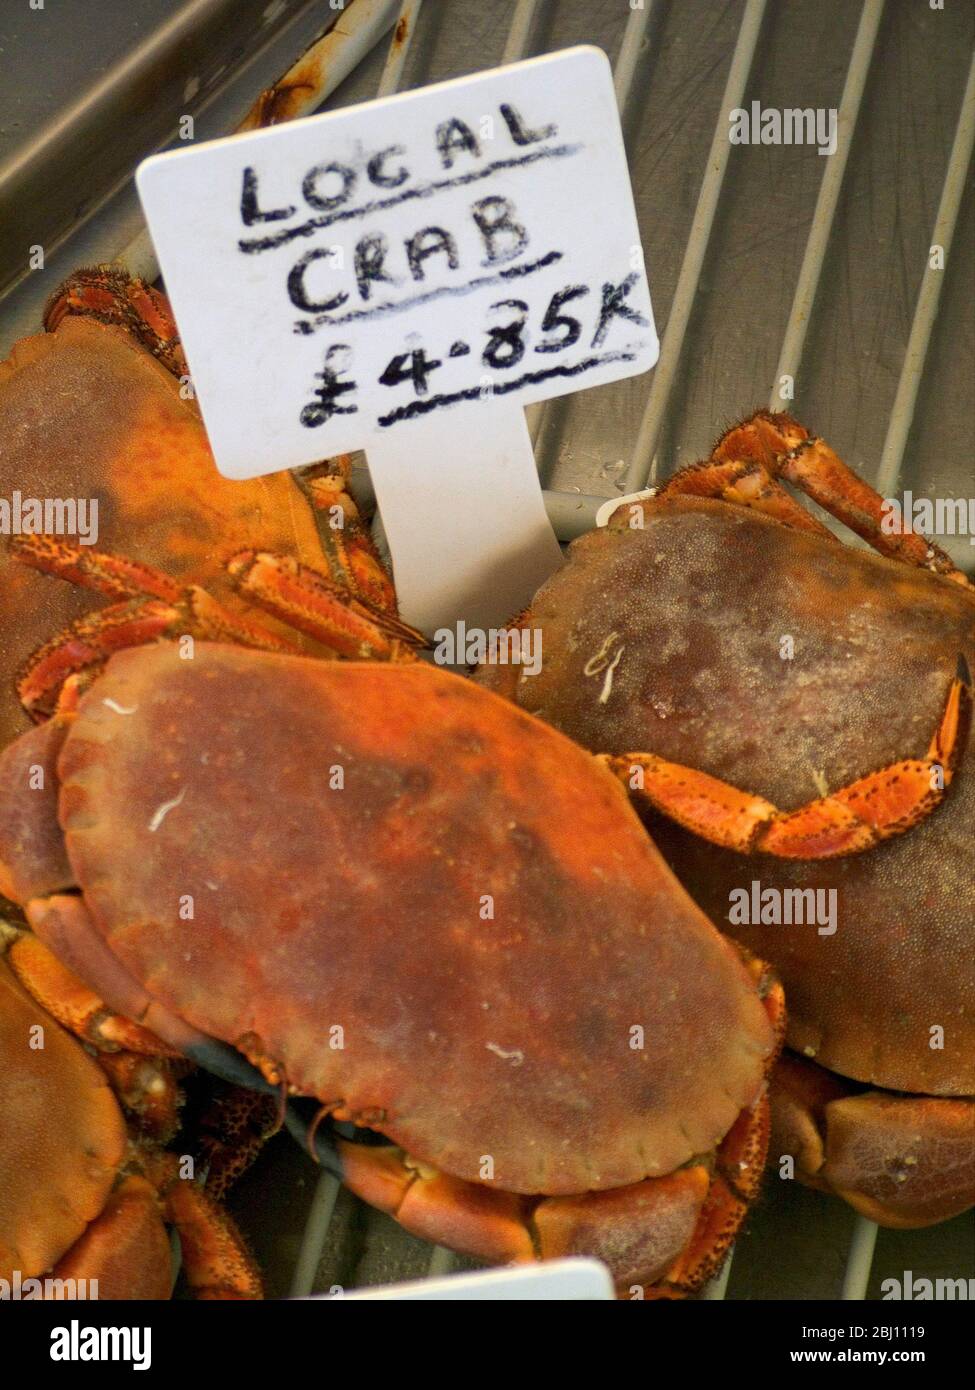 Crabe à vendre dans la fenêtre de la boutique de poissons de West Bay. Dorset Angleterre. - Banque D'Images